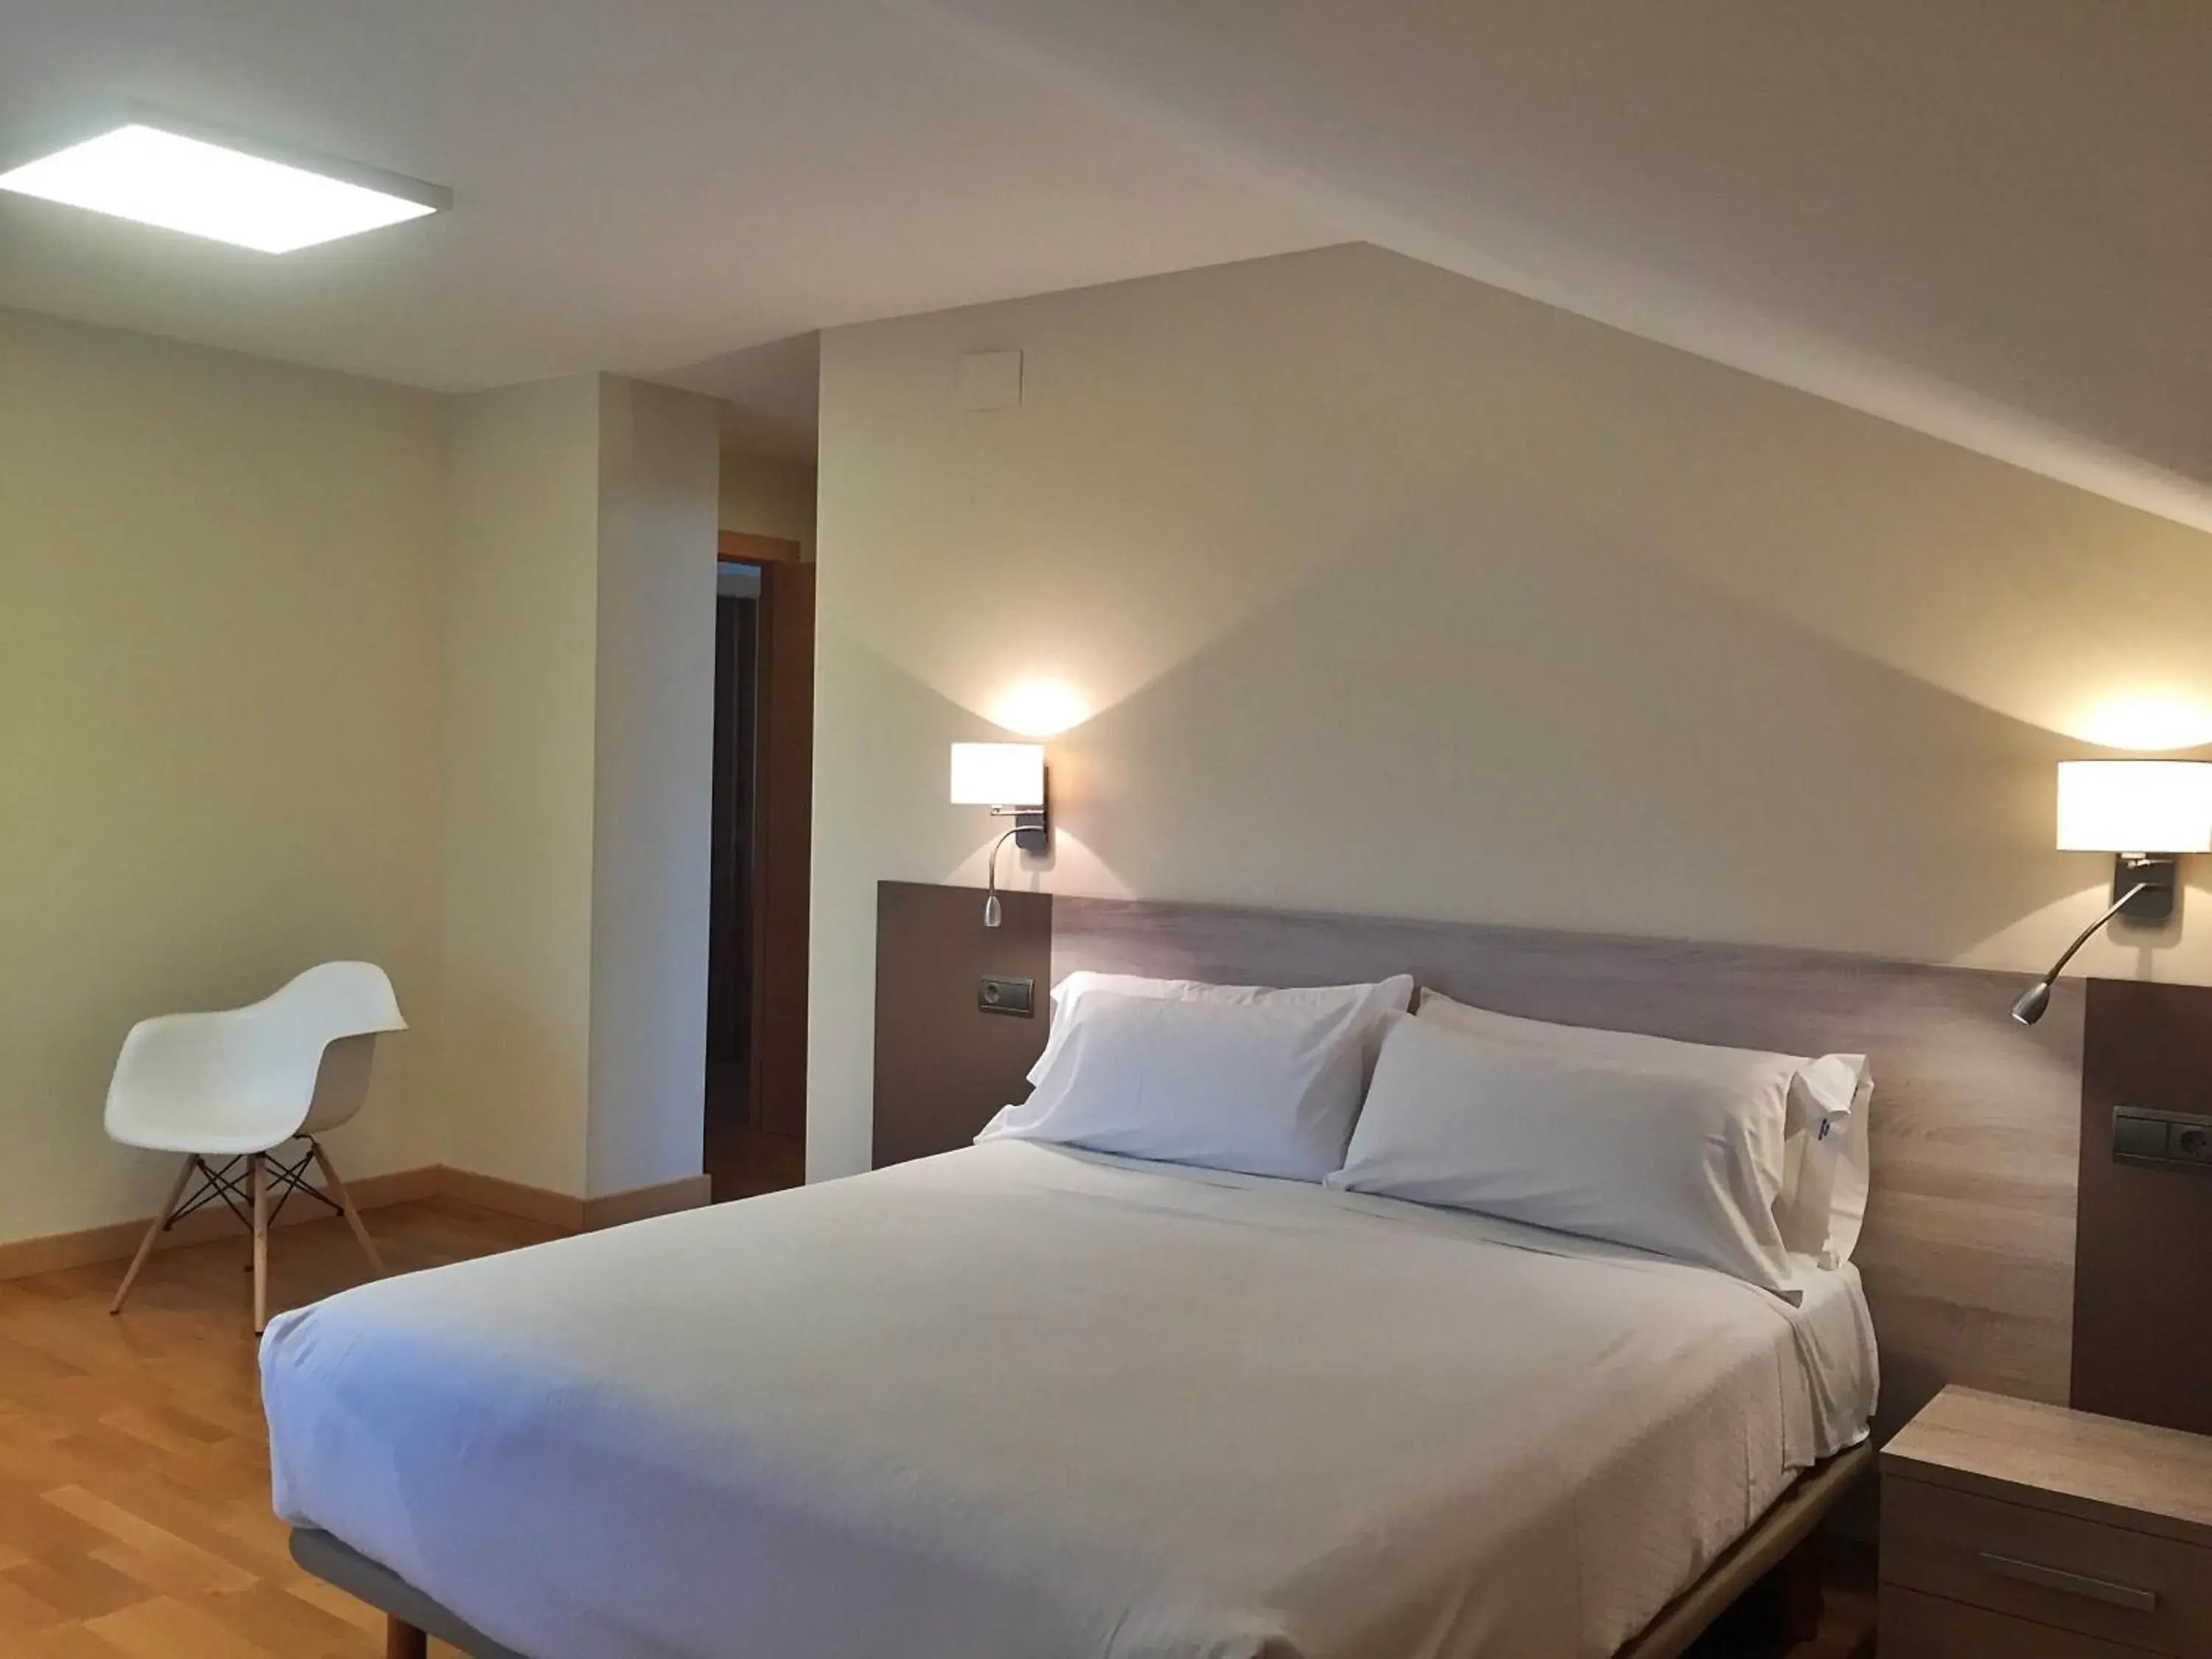 Bed, Room Photo in Apartamentos Albatros